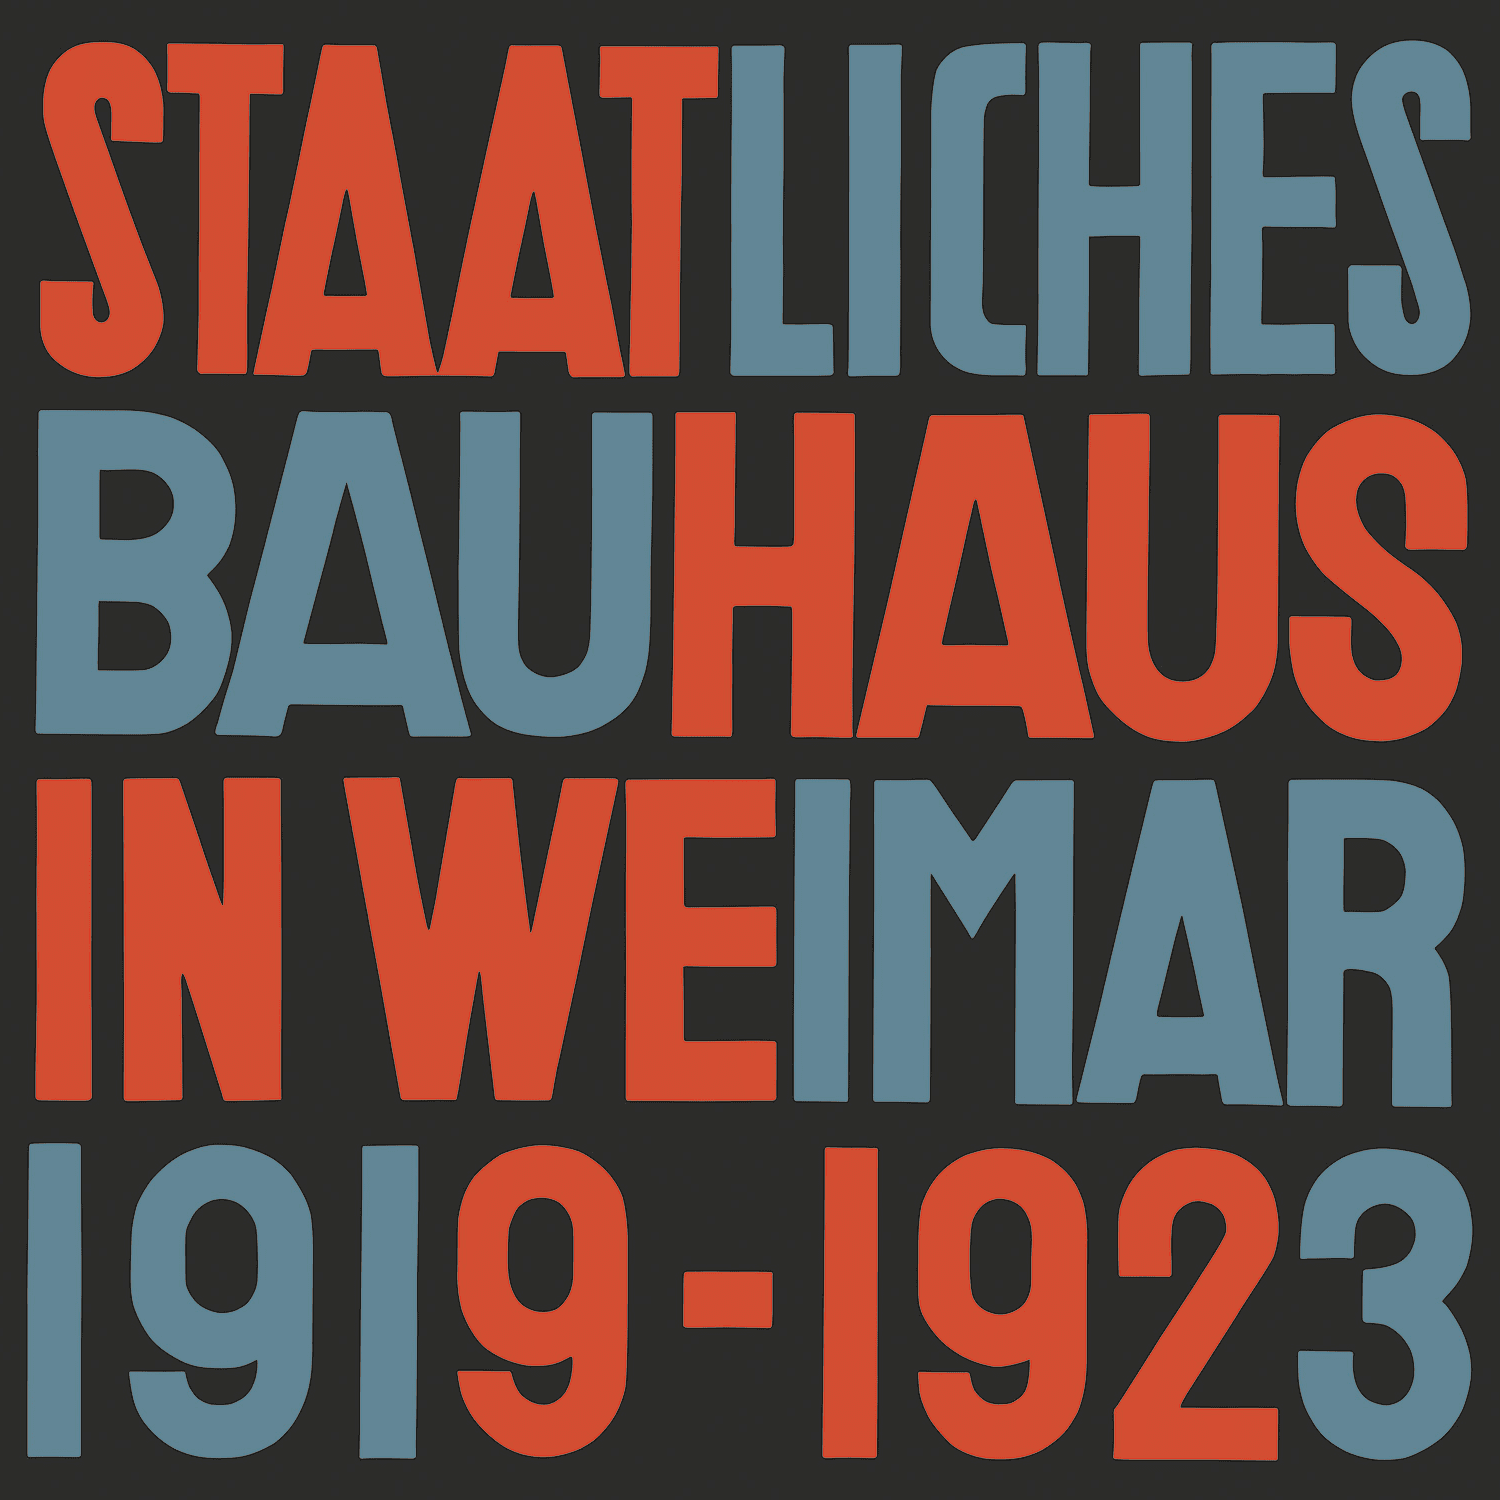 ワイマールの国立バウハウス 1919-1923年の画像